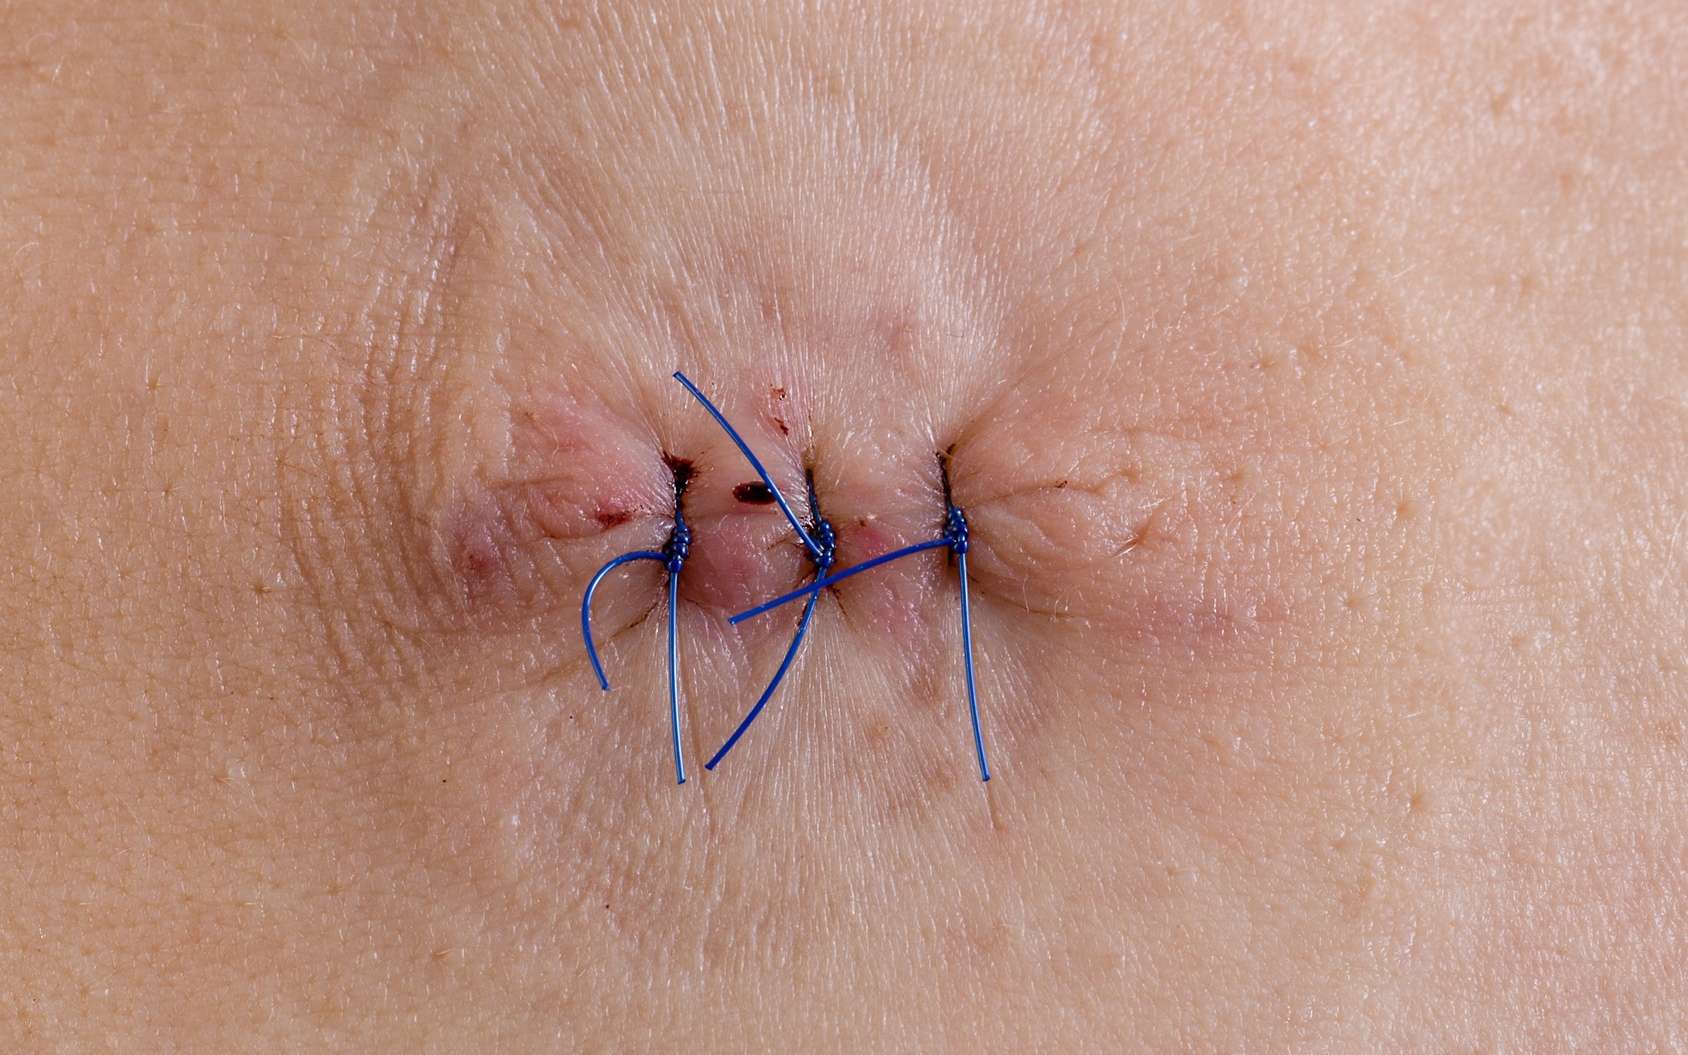 Points de suture : coller plutôt que recoudre pour refermer les plaies ?